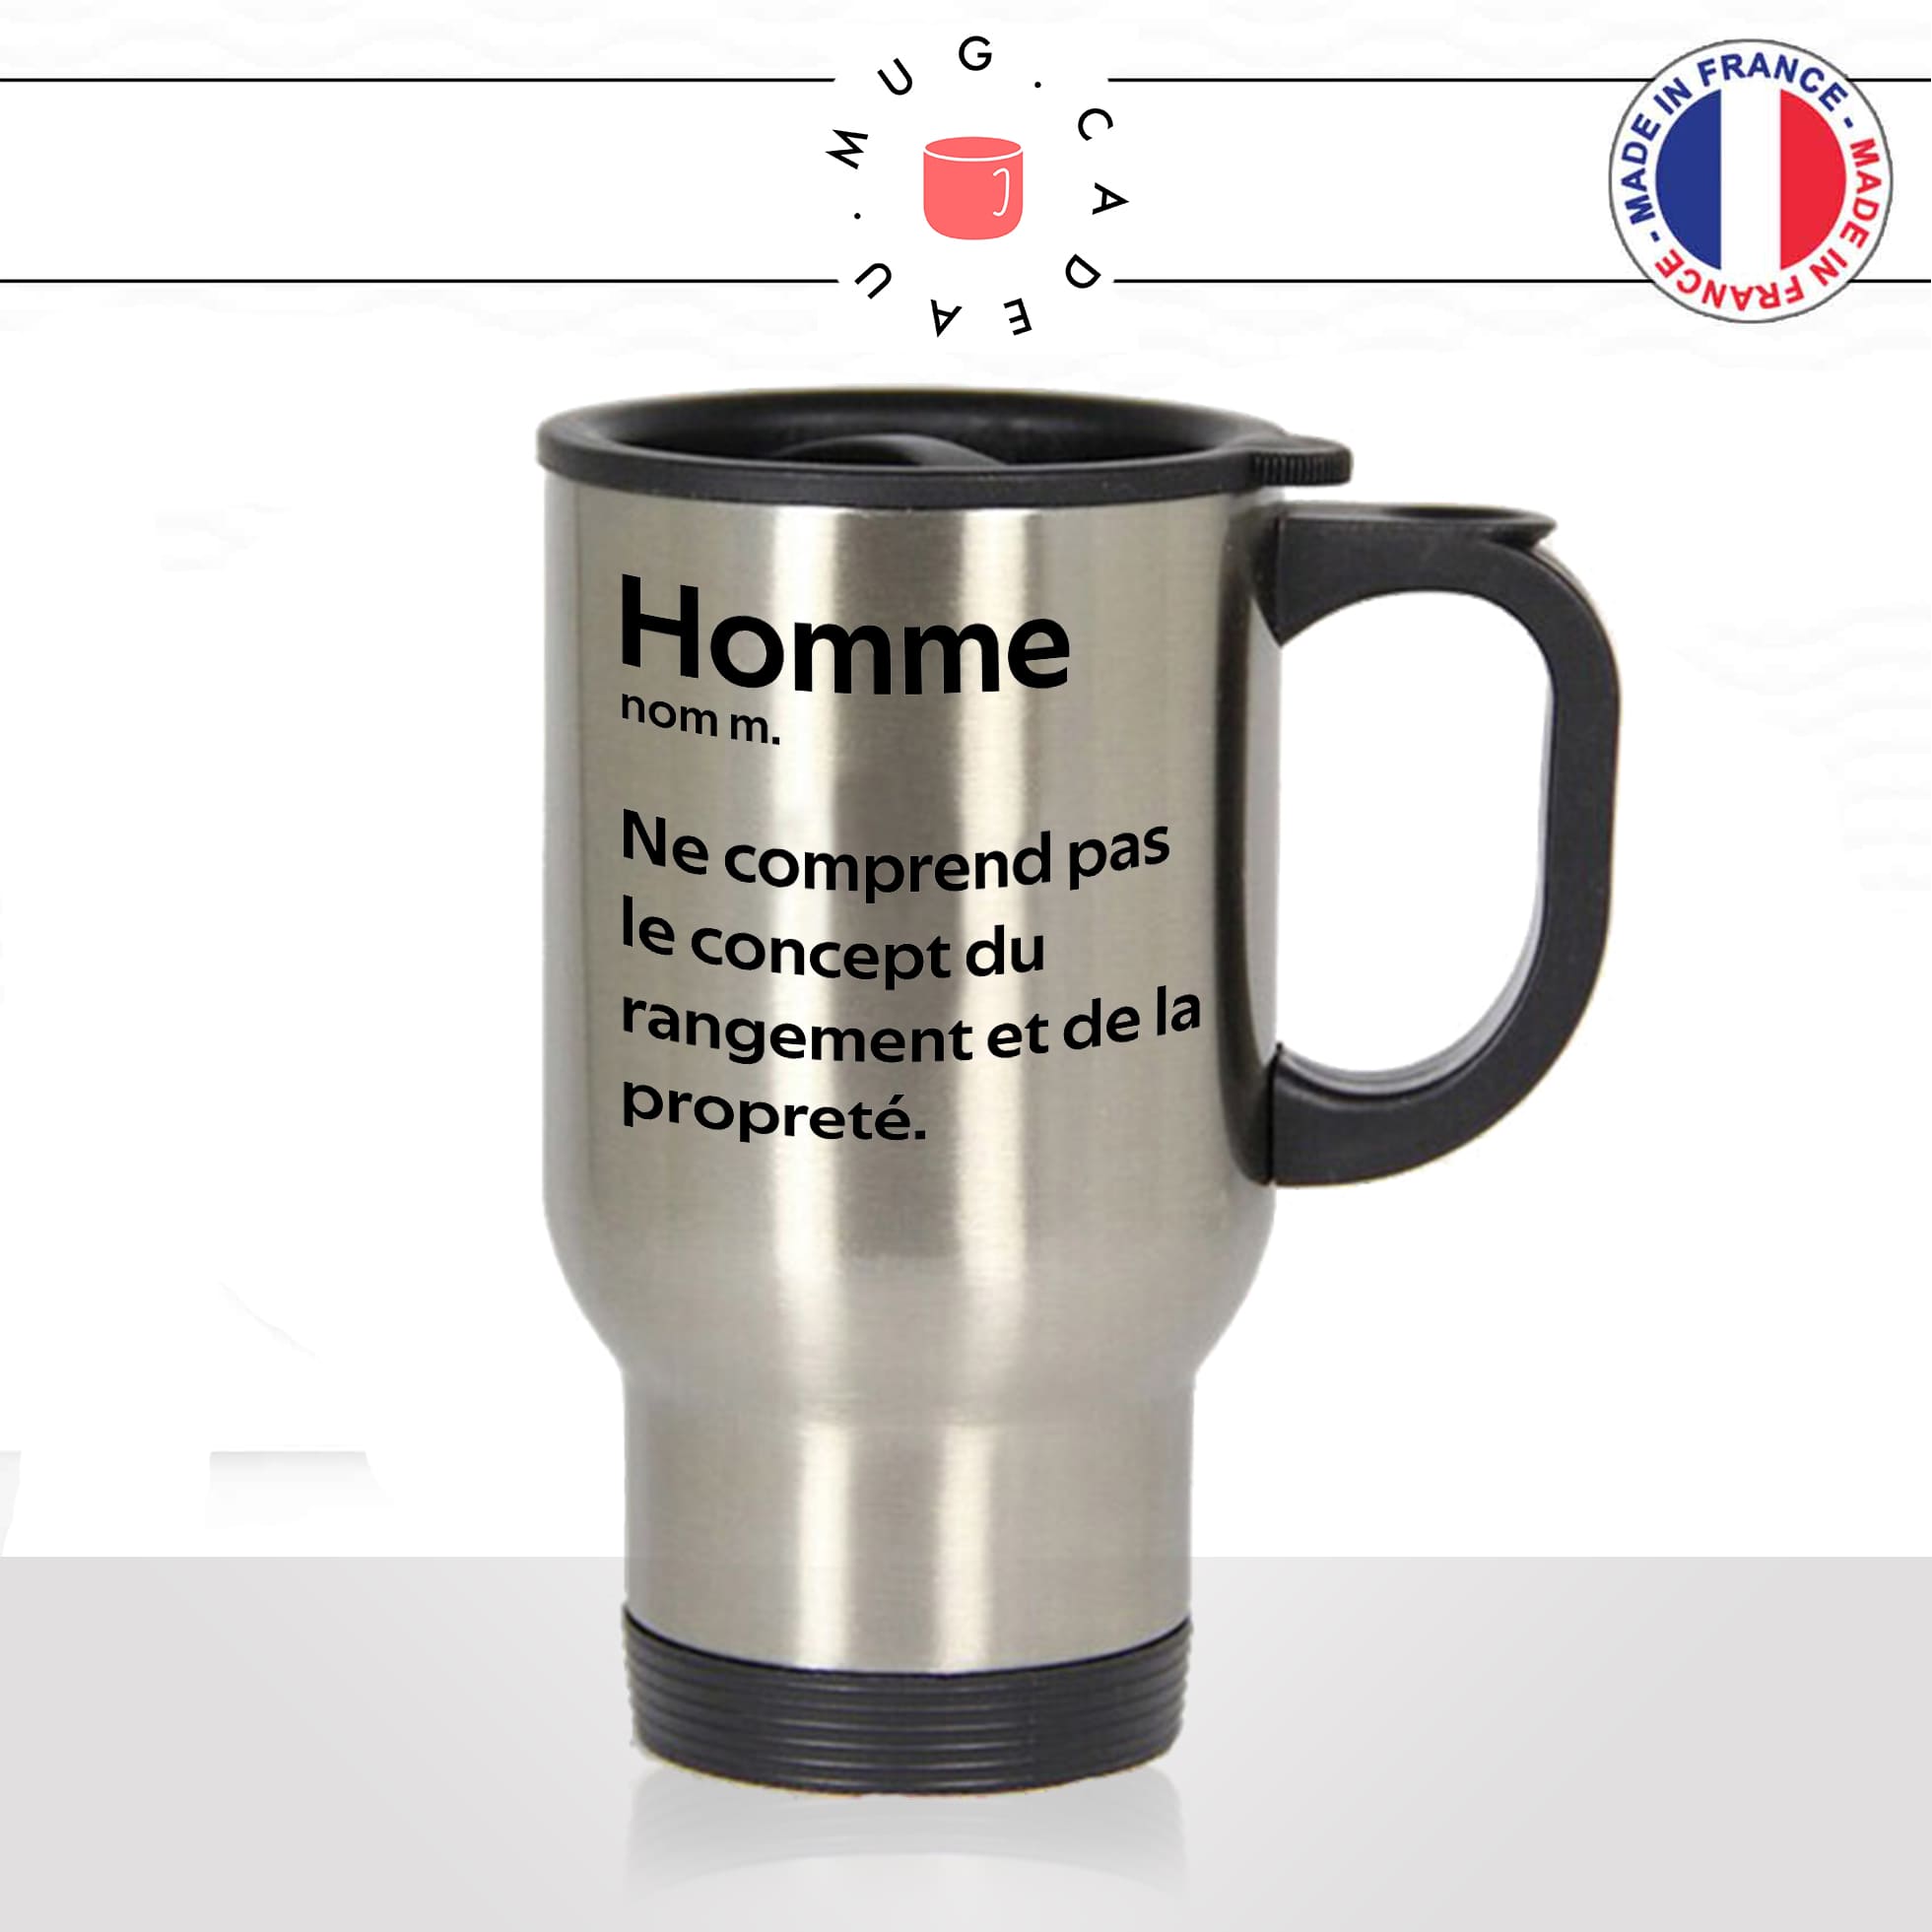 mug-tasse-thermos-isotherme-voyage-homme-définition-ne-comprend-pas-le-concept-du-rangement-propreté-défaut-couple-fun-idée-cadeau2